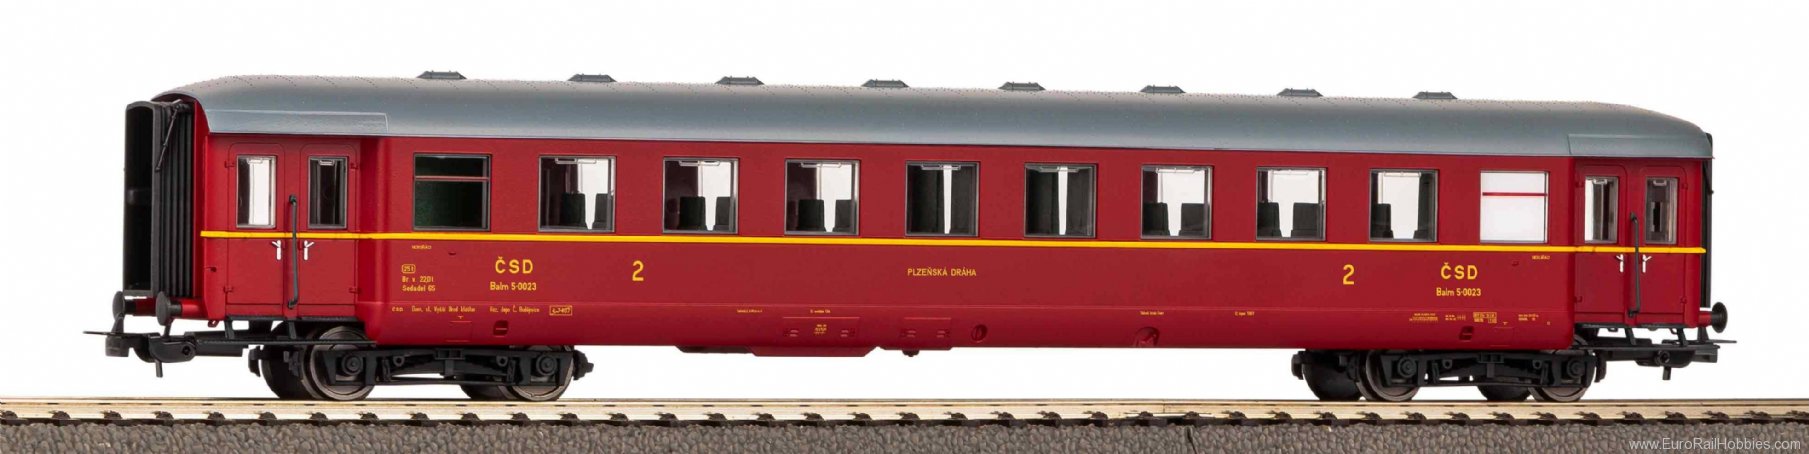 Piko 53284 Balm CSD III apron express train car (Piko Cl